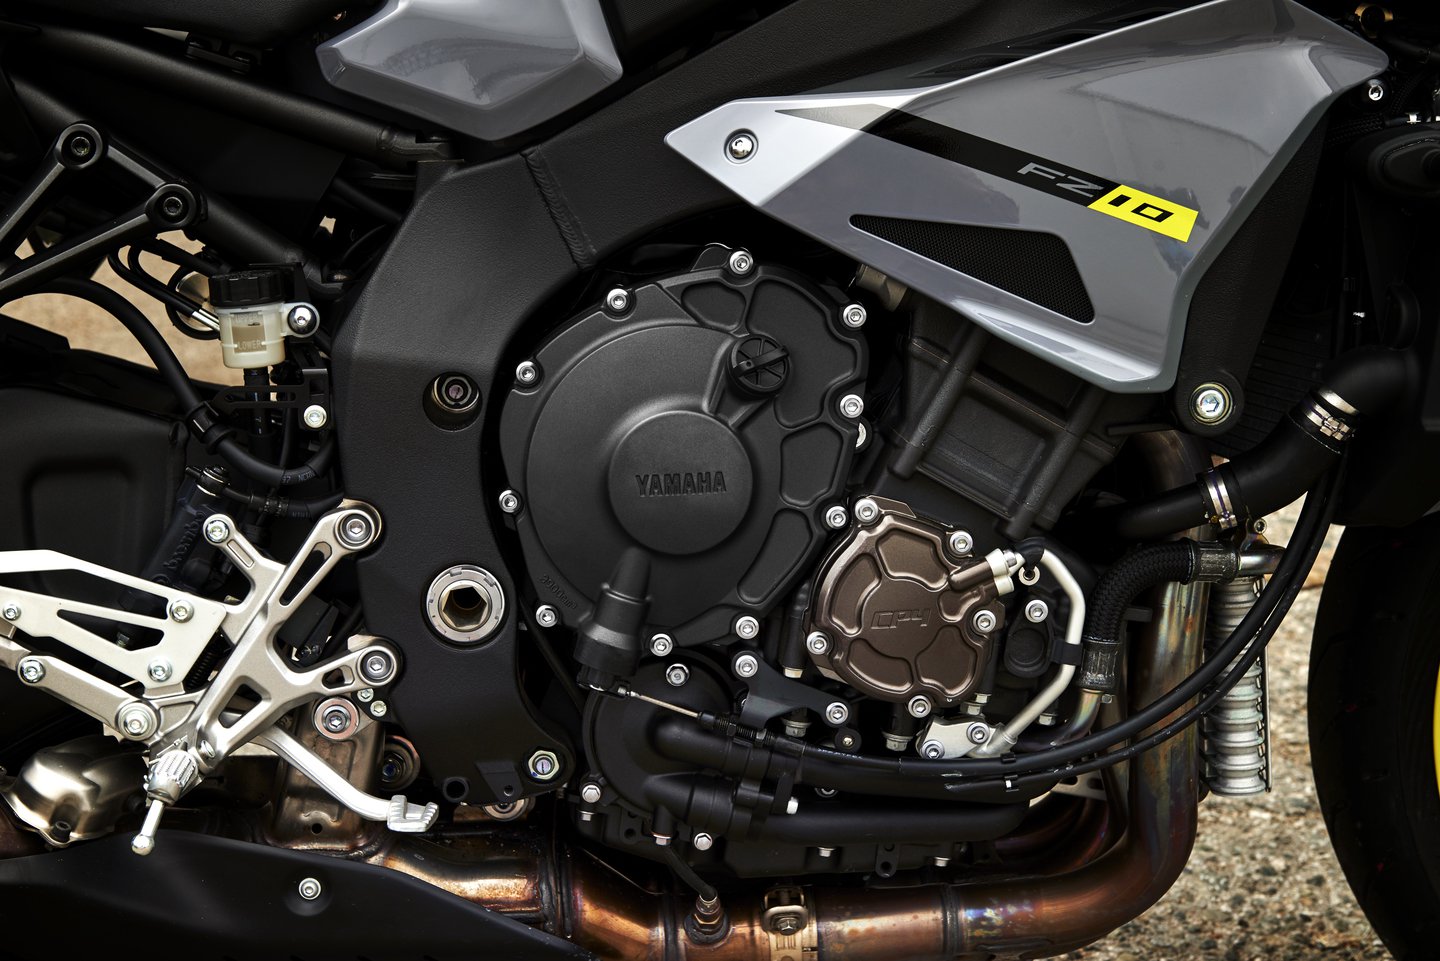 
Vì là phiên bản naked bike của Yamaha YZF-R1 nên FZ-10 2017 dùng chung bộ khung, tay đòn và động cơ. Cụ thể, trái tim của Yamaha FZ-10 2017 là khối động cơ 4 xy-lanh thẳng hàng, 4 van/xy-lanh, làm mát bằng dung dịch, dung tích 998 cc. 
